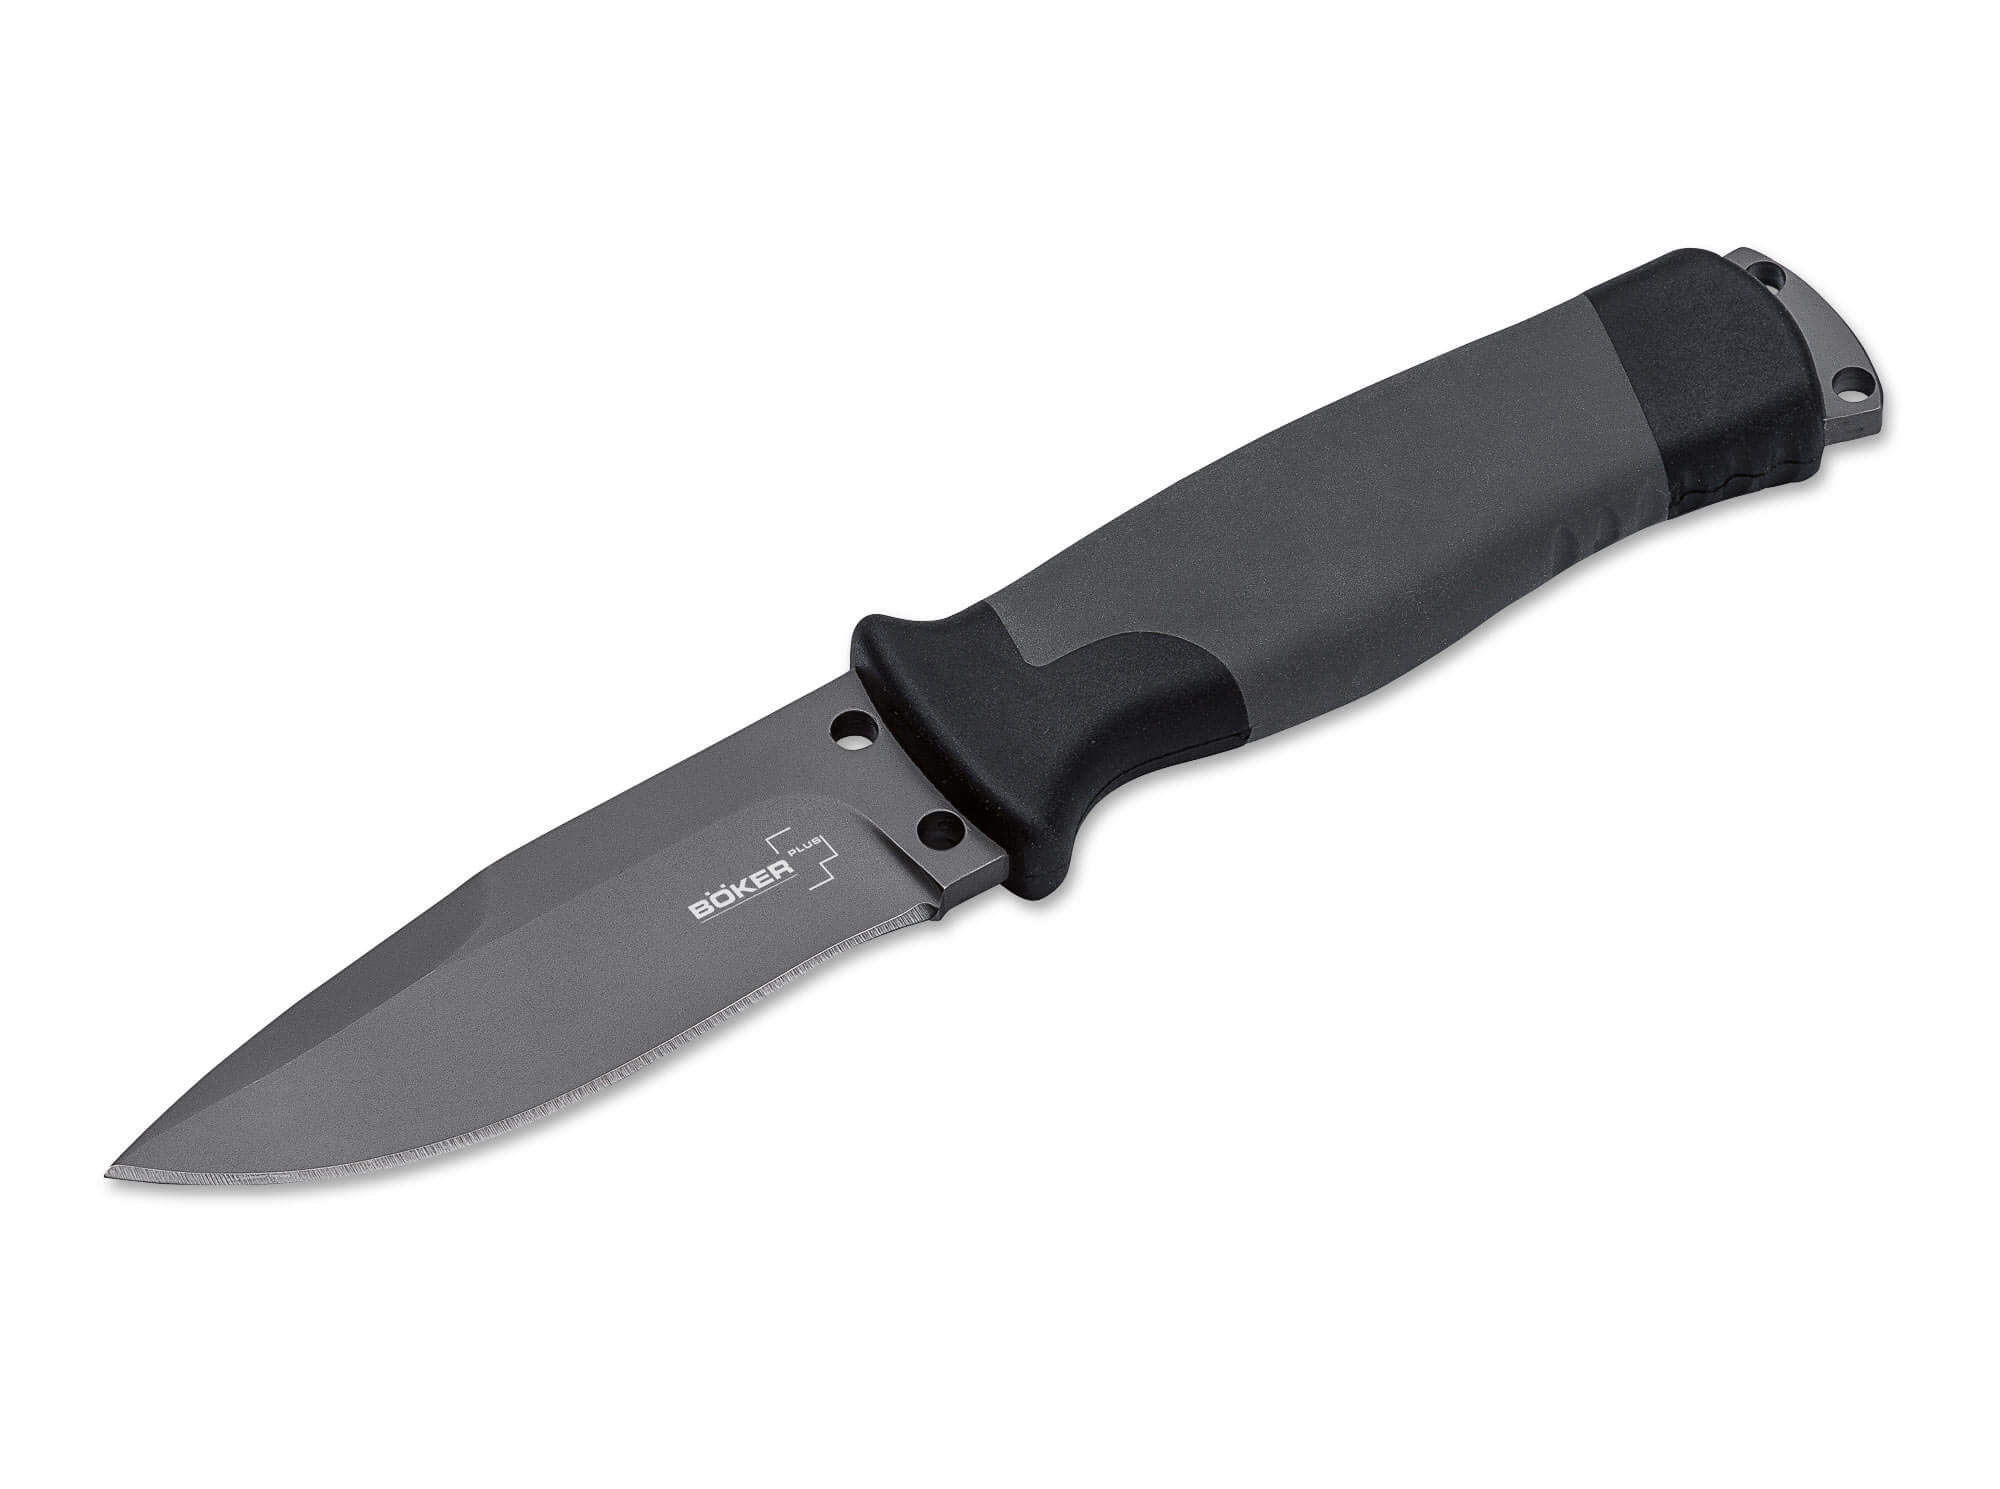 Böker Plus Outdoorsman 3.66" Fixed Blade Knife